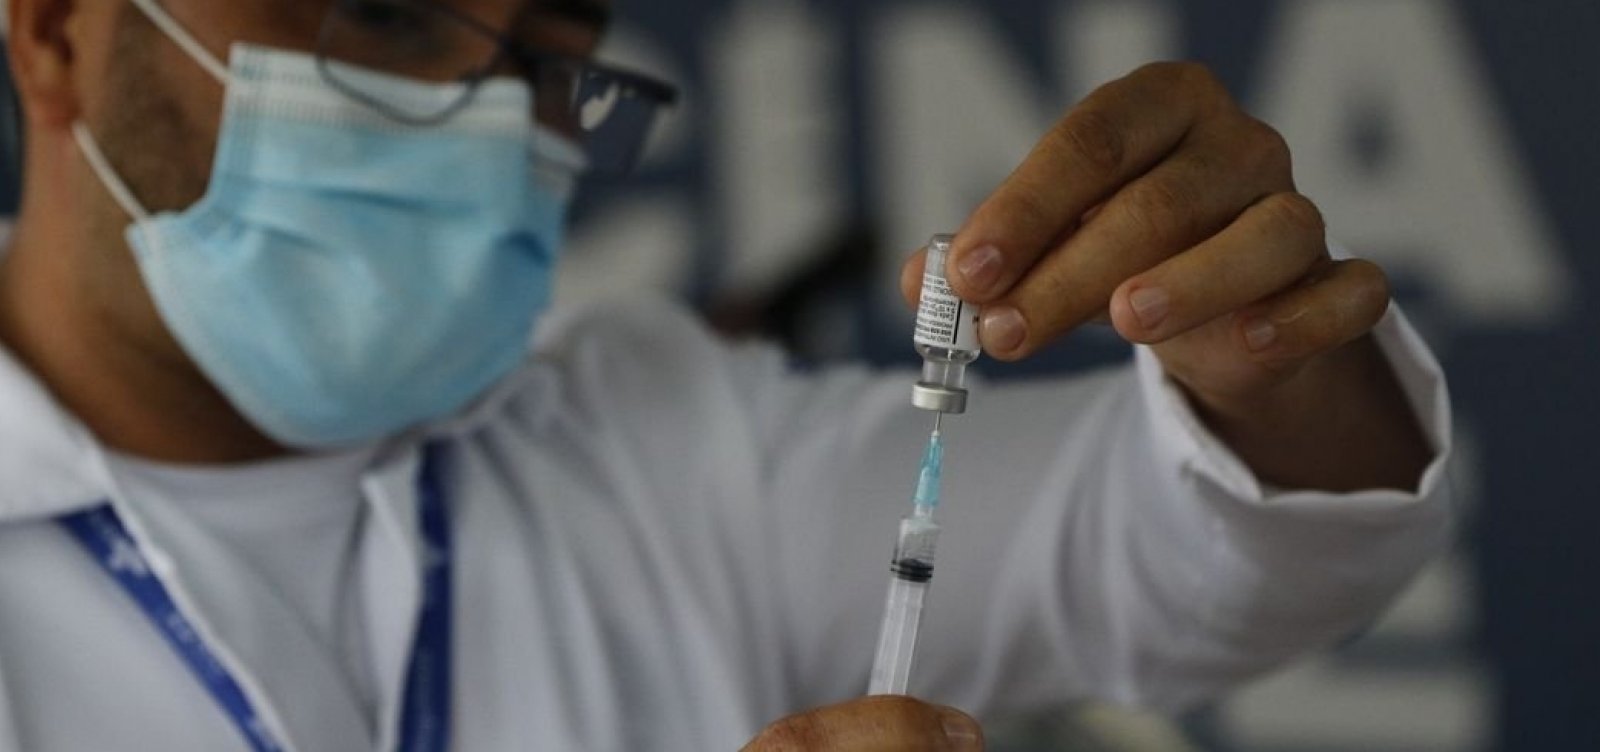 Vacina da Pfizer não foi causa provável de morte de adolescente, diz governo de SP